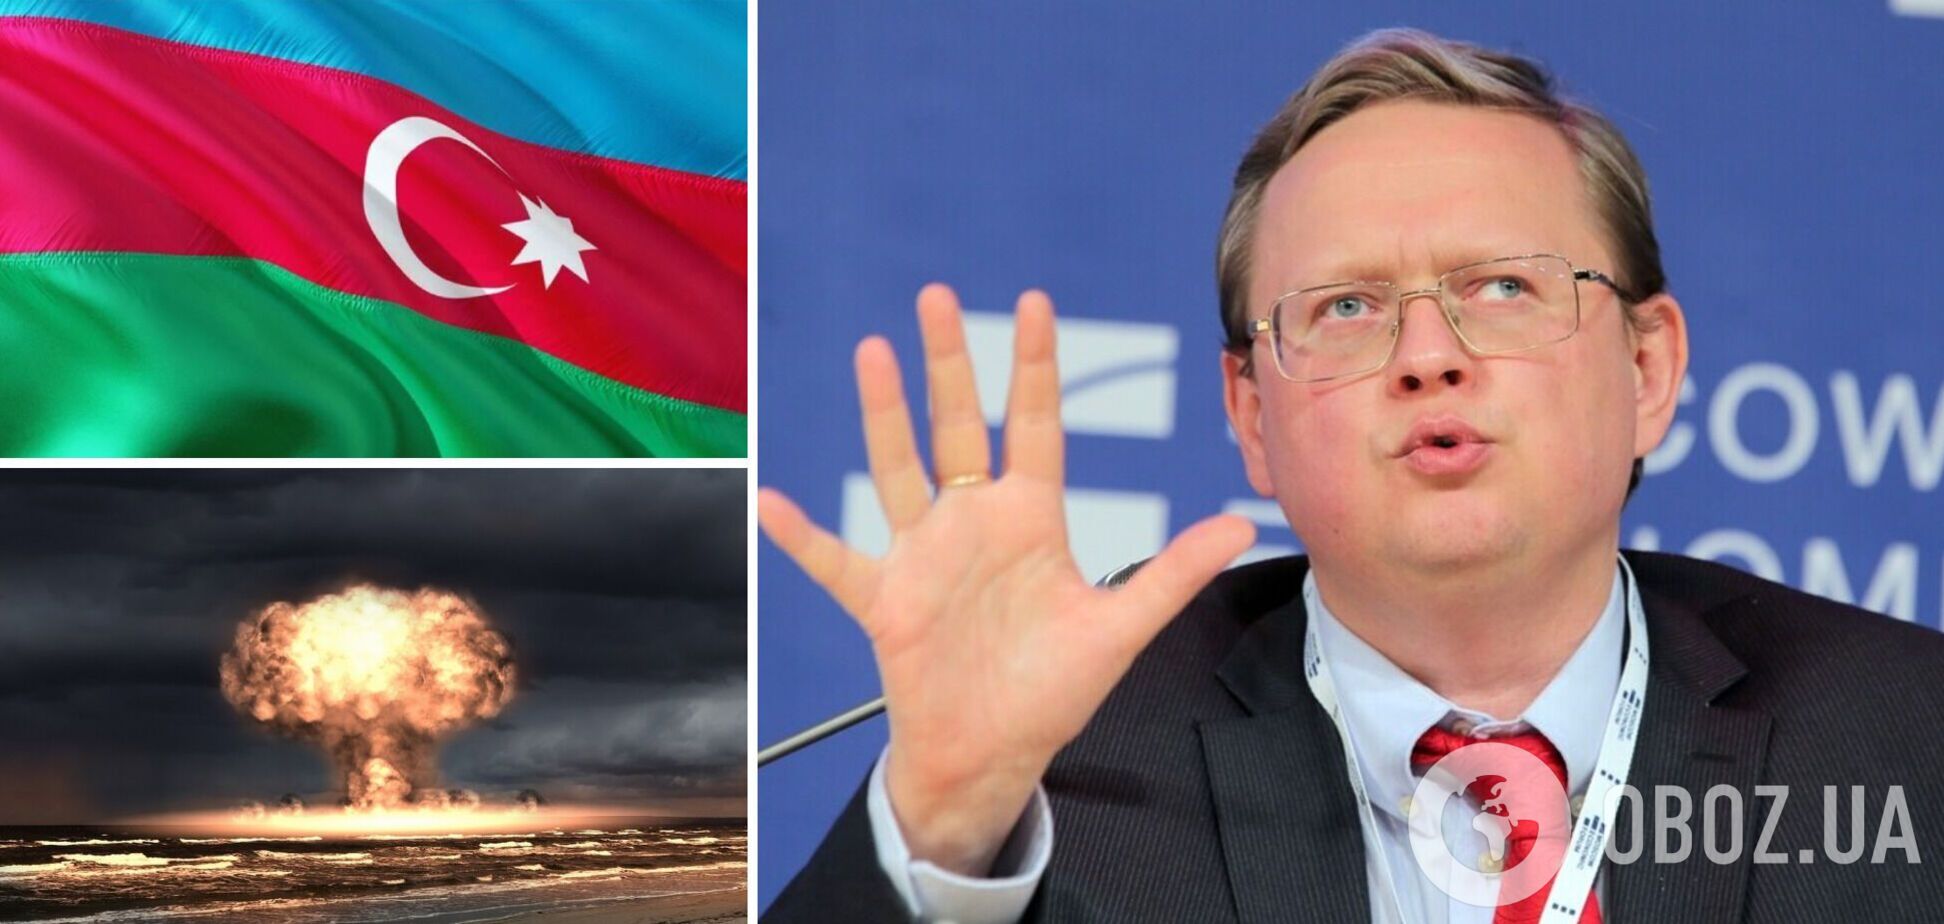 Депутат Госдумы РФ заговорил о нанесении ядерного удара по Азербайджану и устроил 'голосование' в сети